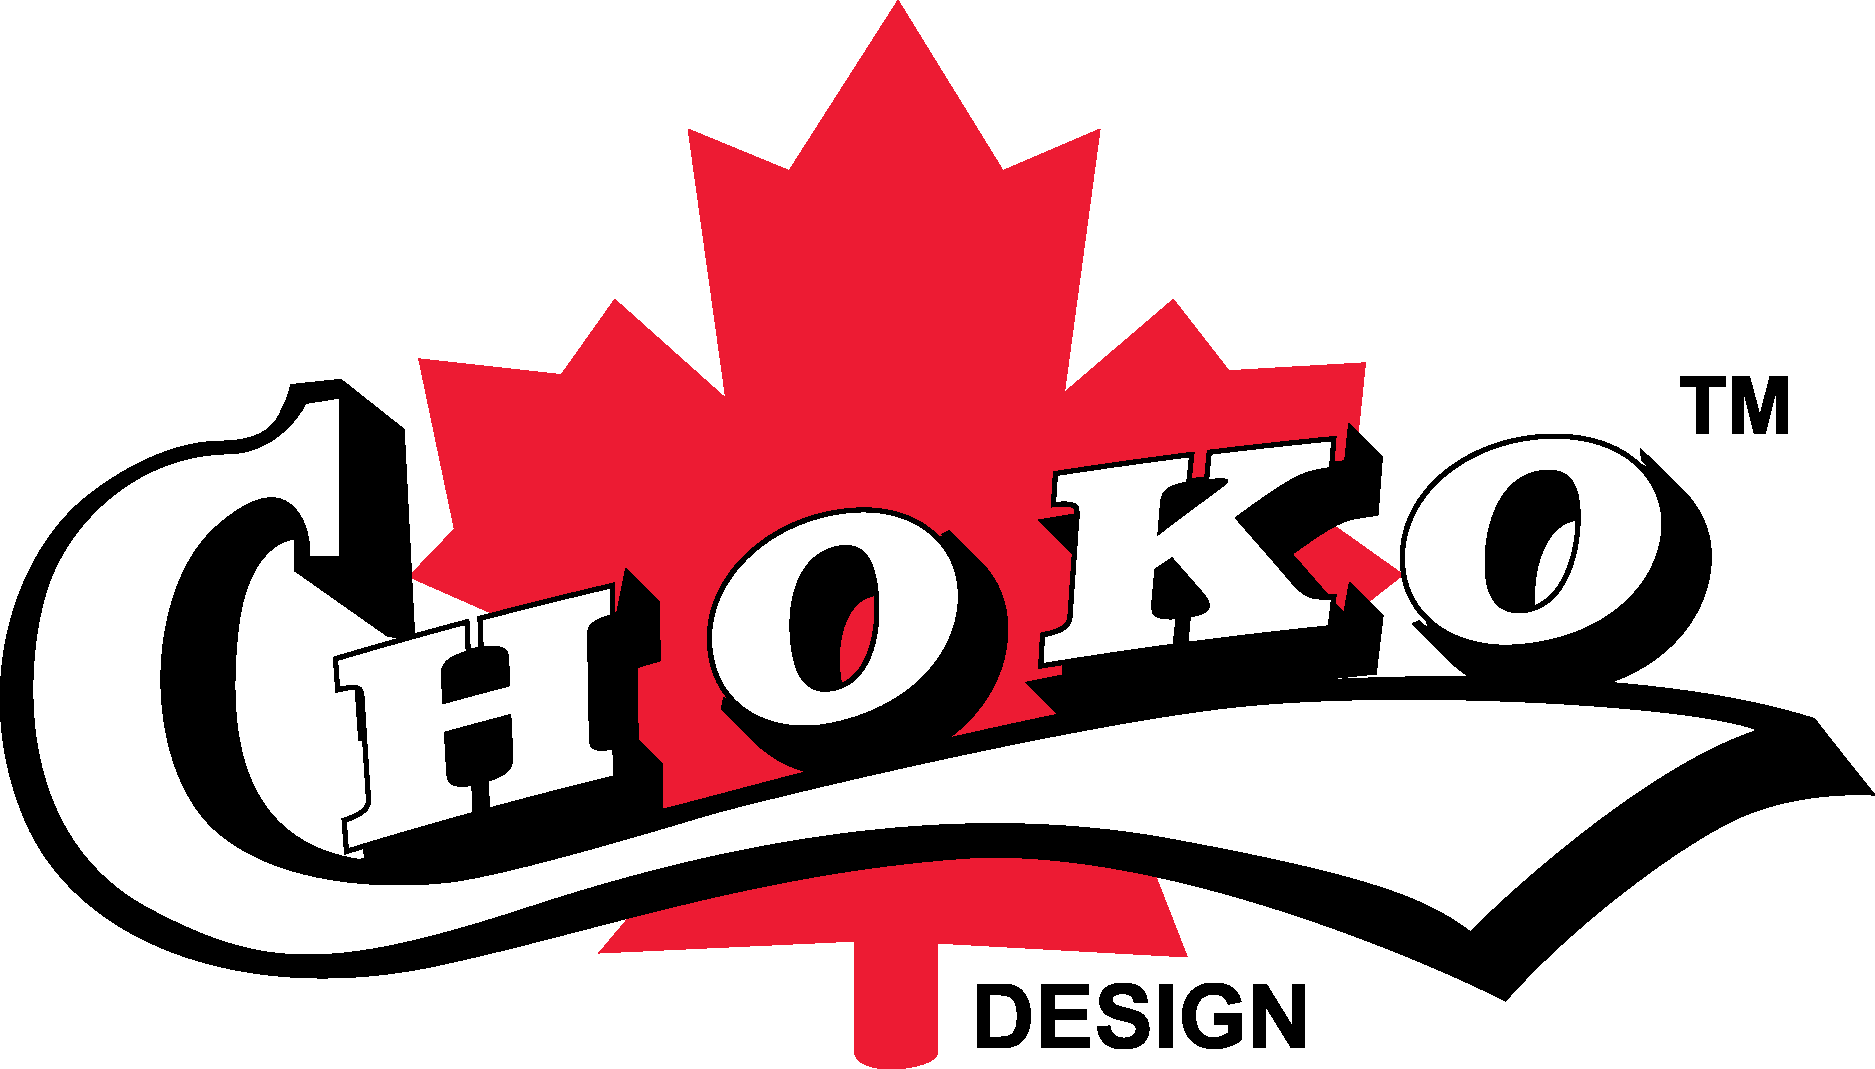 Choko Logo Vector - (.Ai .PNG .SVG .EPS Free Download)